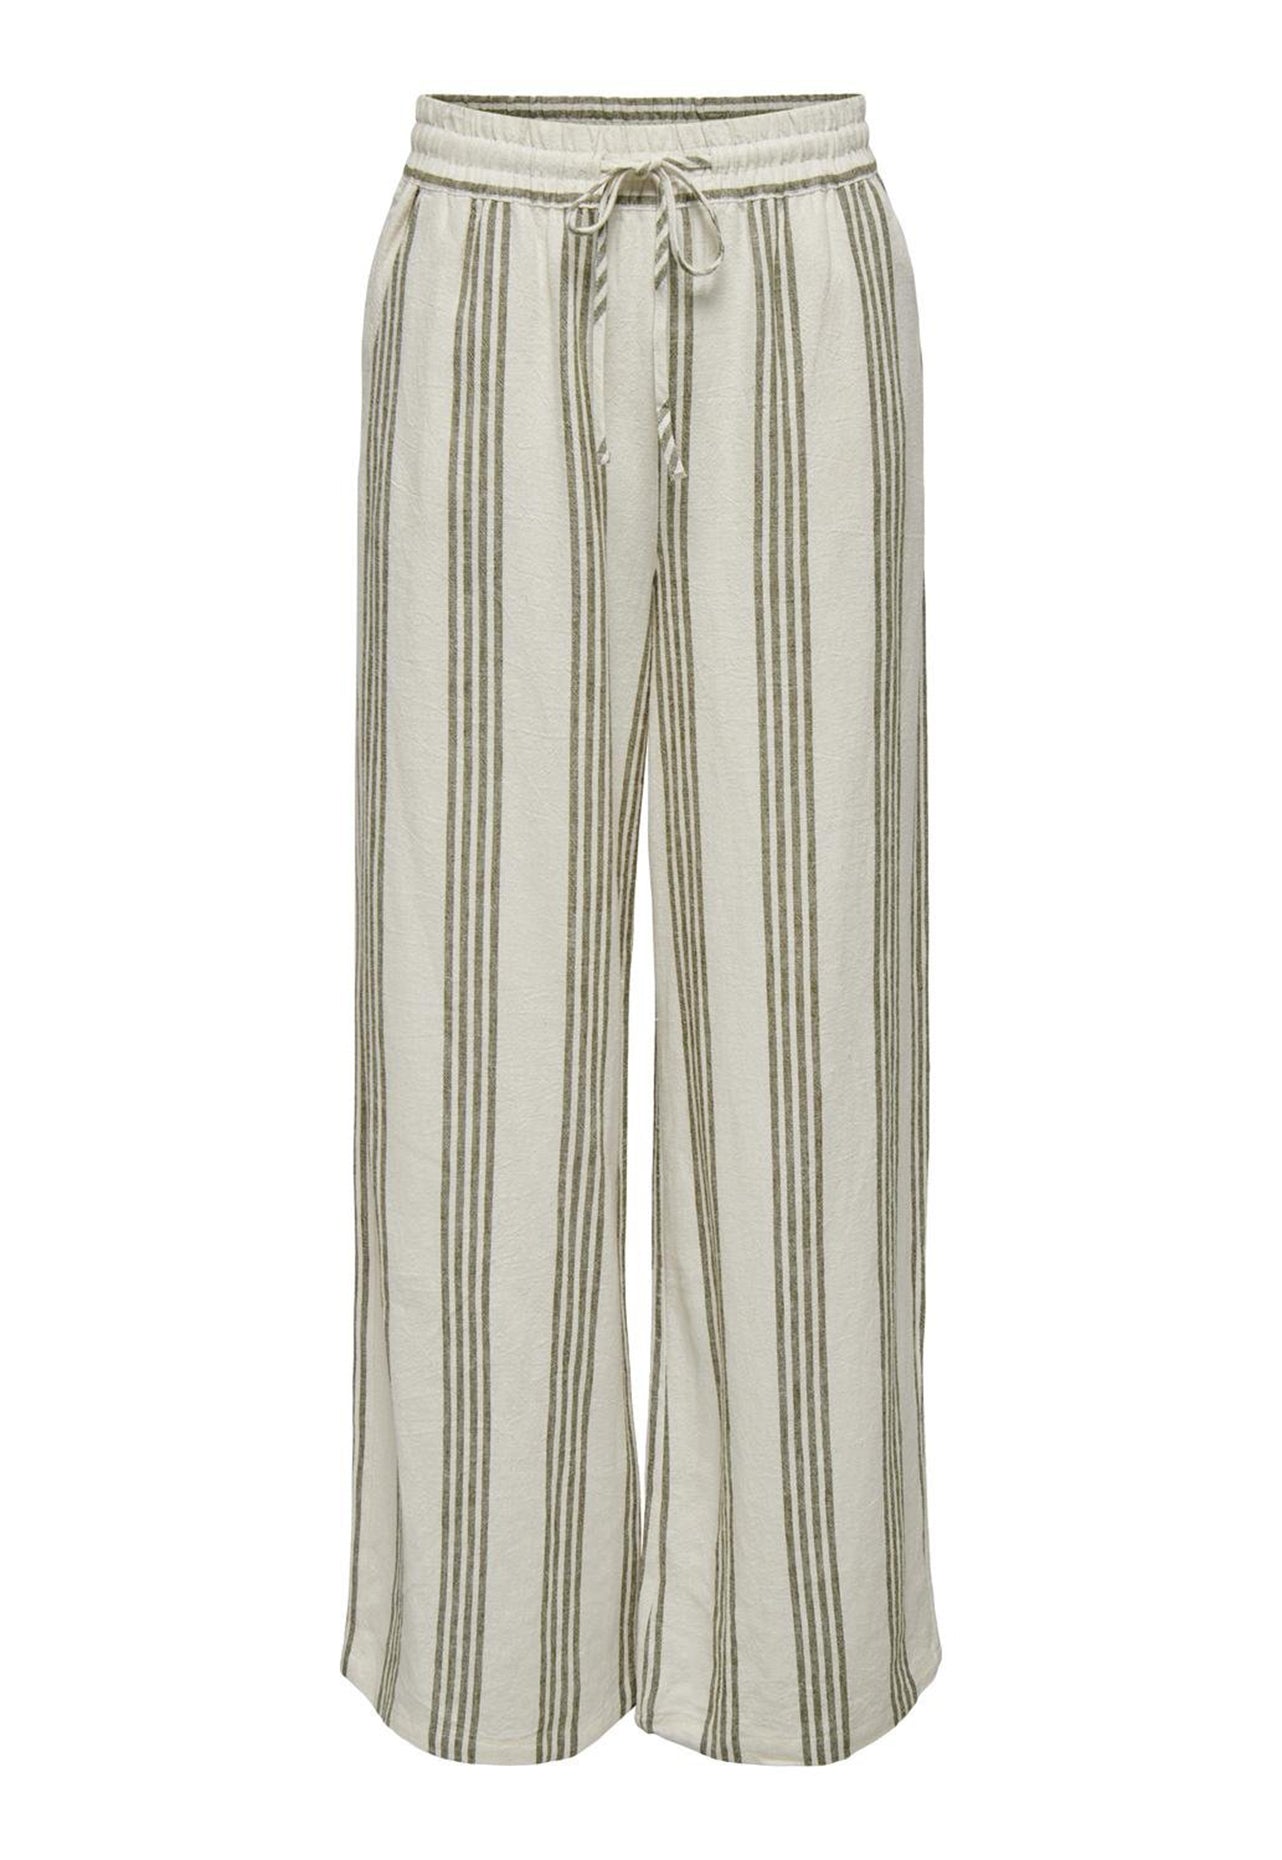 JDY Say Højtaljede, brede ben-stribede hør-Co-ord-bukser med bindebånd i taljen i beige og olivengrøn - One Nation-tøj